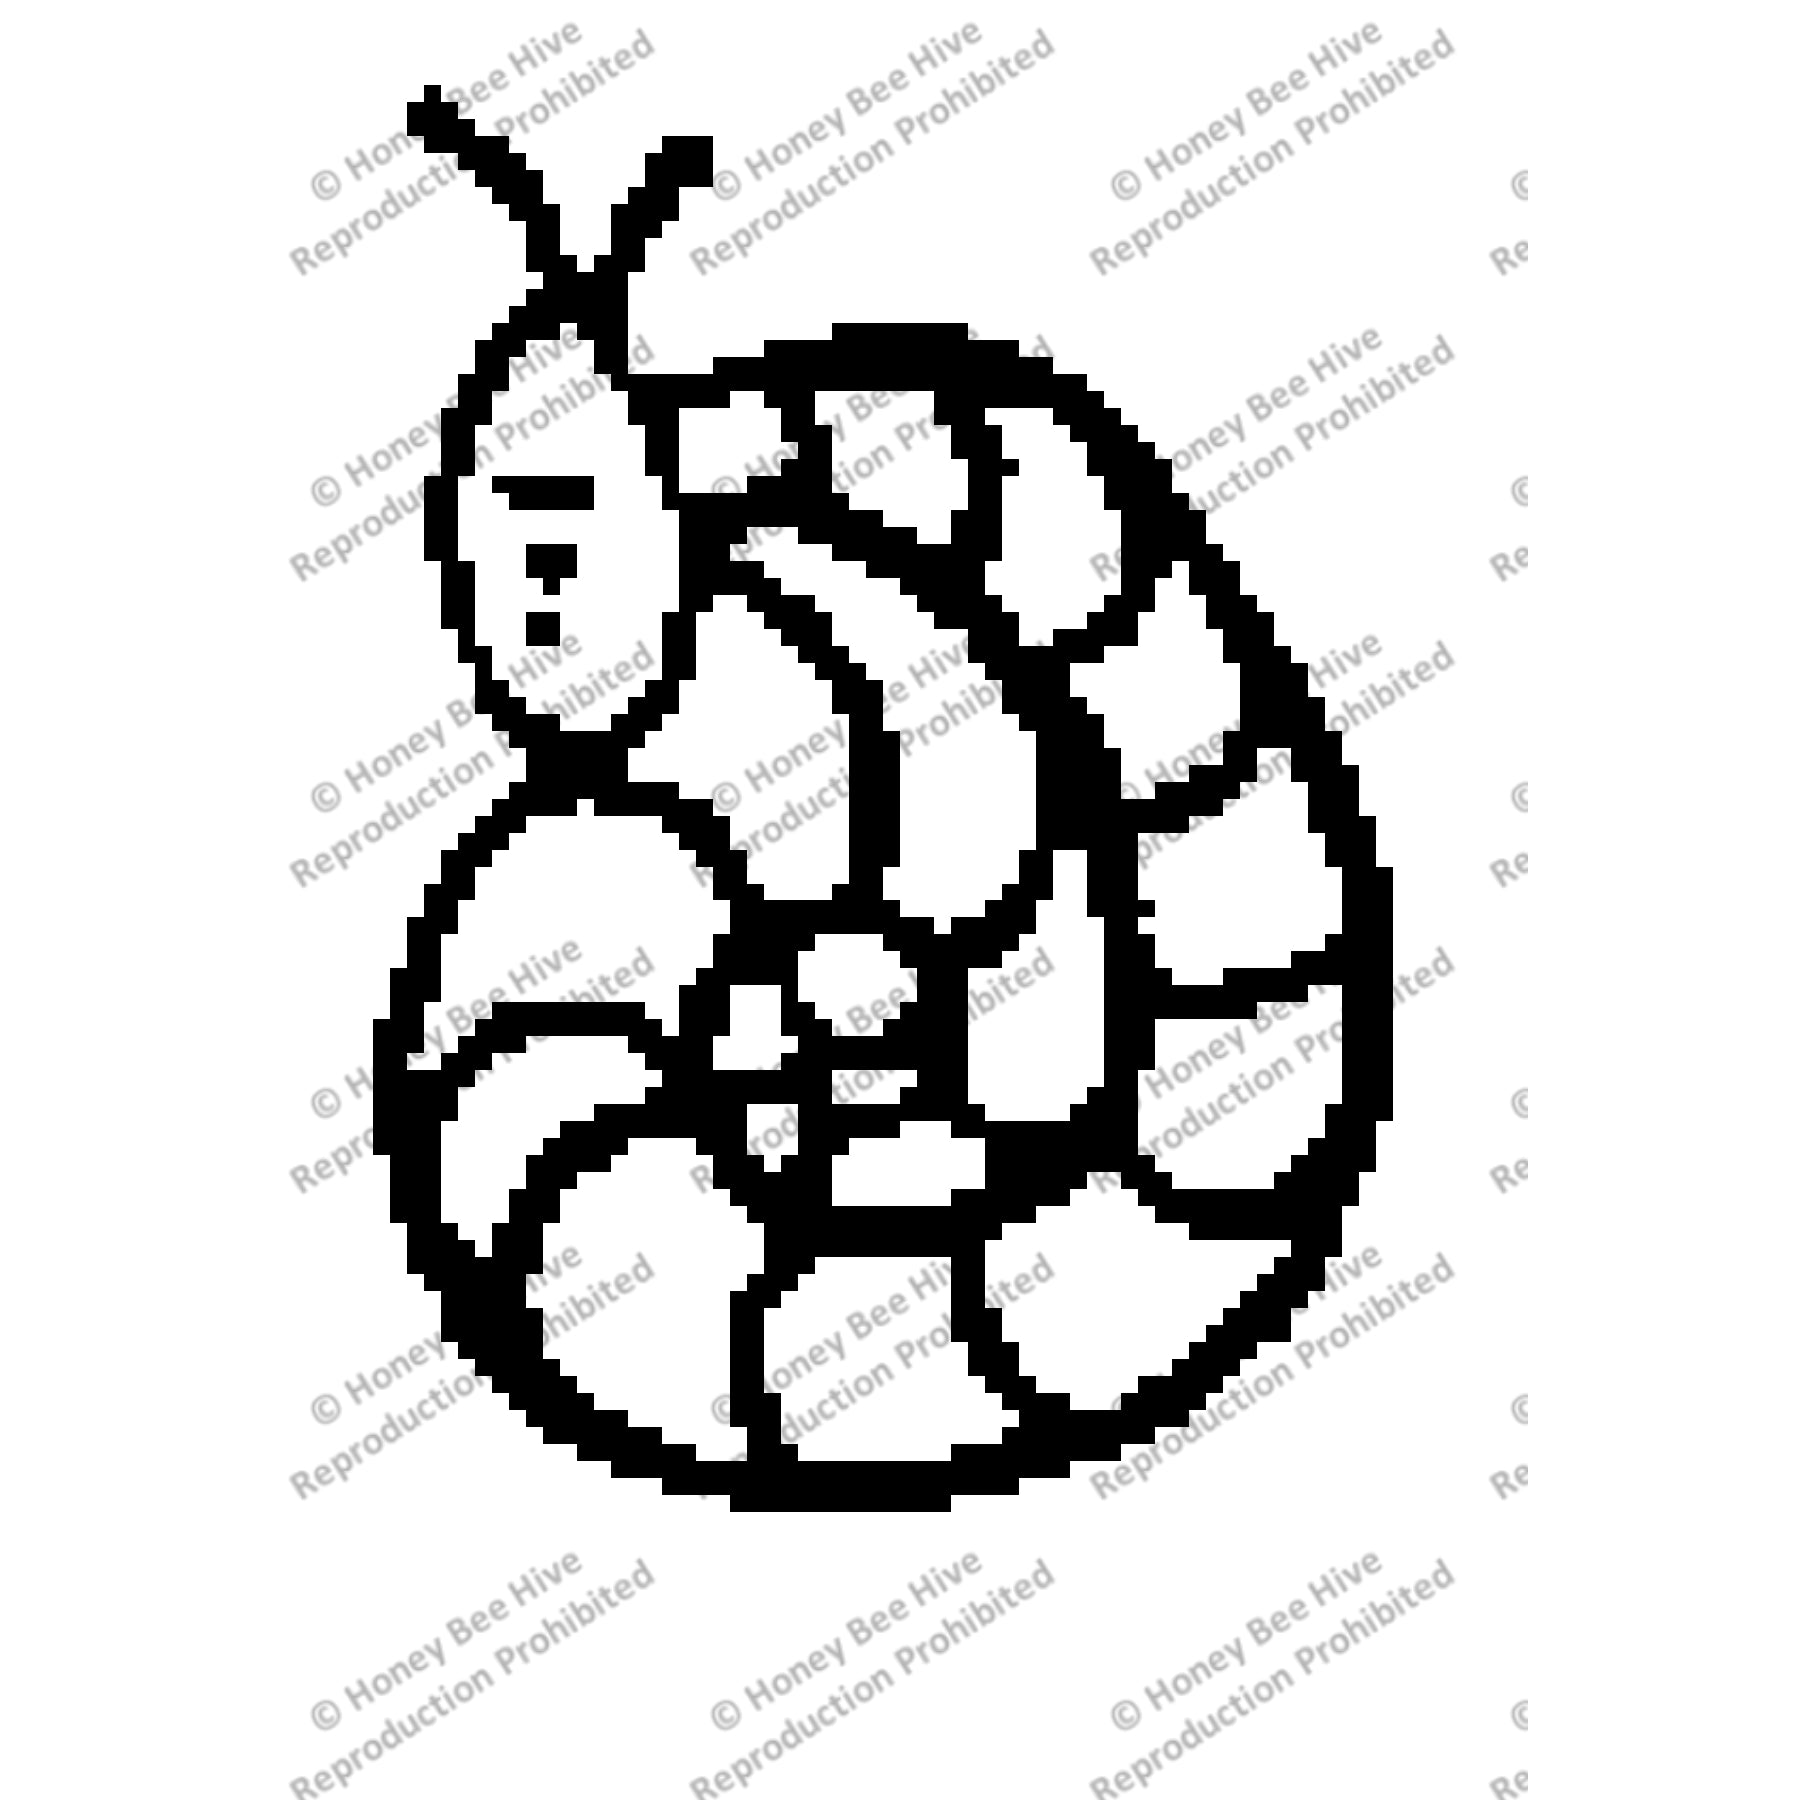 Worm, rug hooking pattern